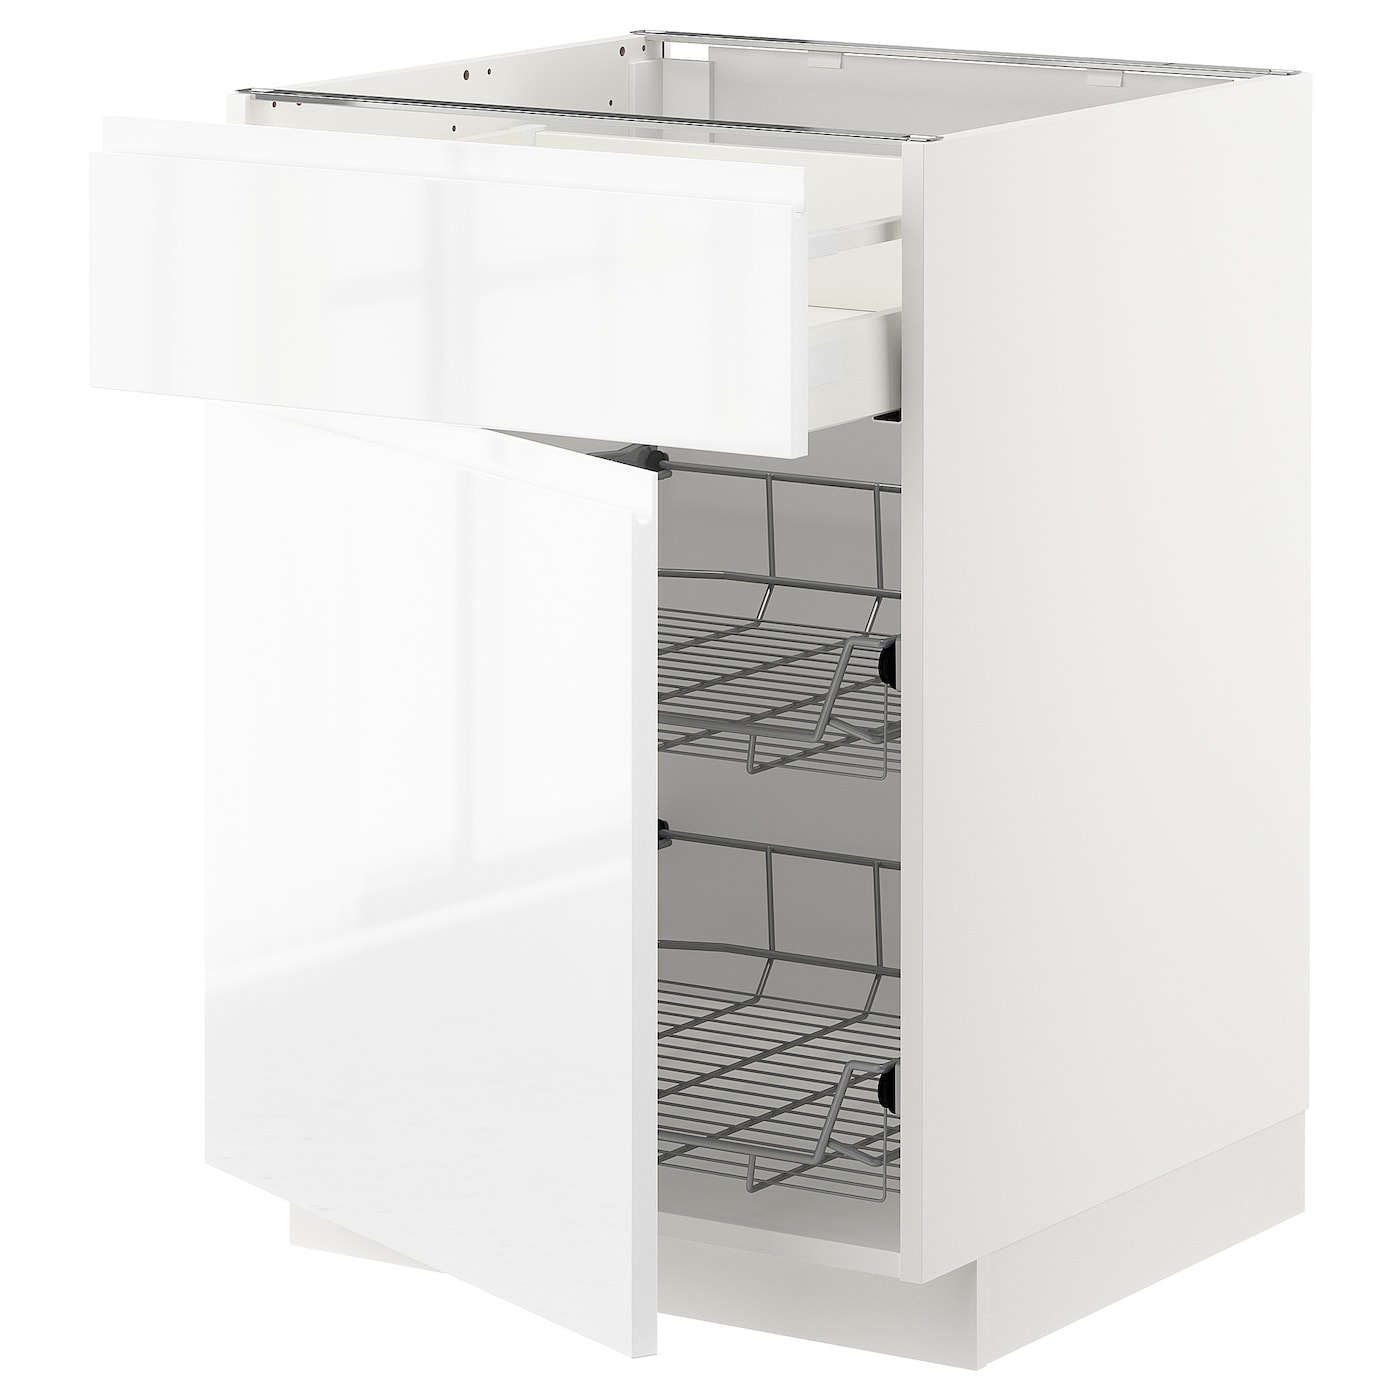 Напольный шкаф - METOD / MAXIMERA IKEA/ МЕТОД/ МАКСИМЕРА ИКЕА,  60х88 см, белый